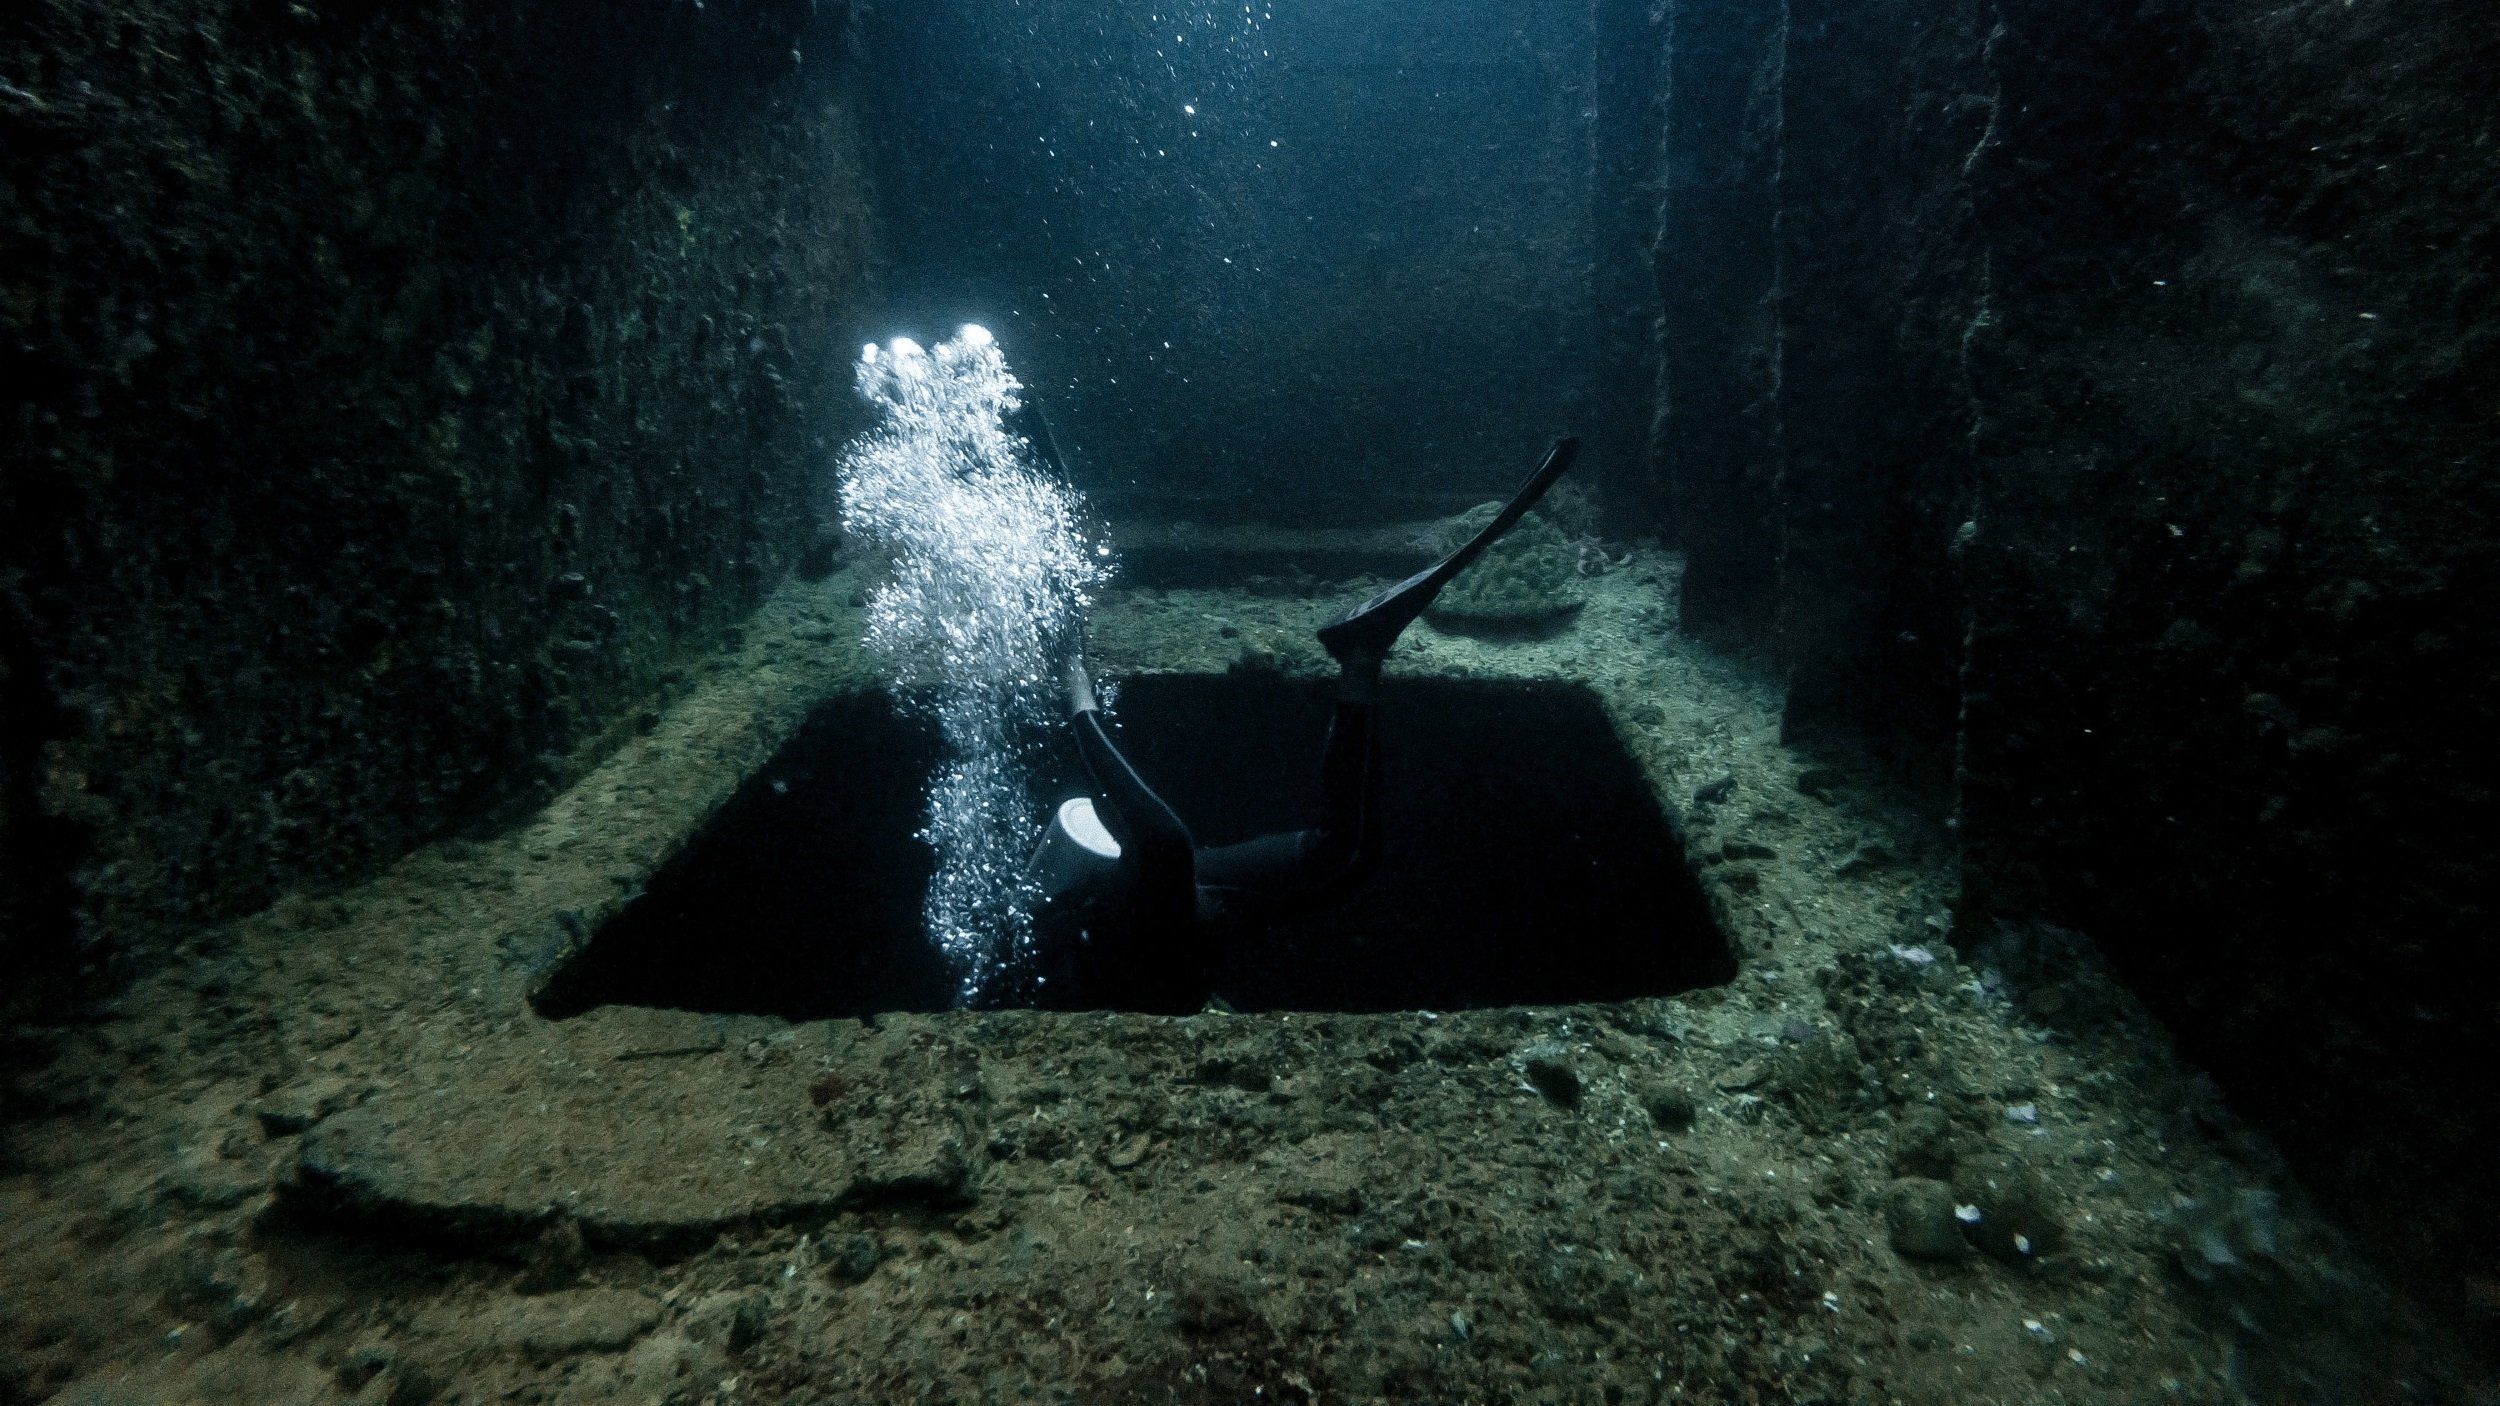 Mélytengeri búvár fedez fel egy hajóroncsot az óceán mélyén